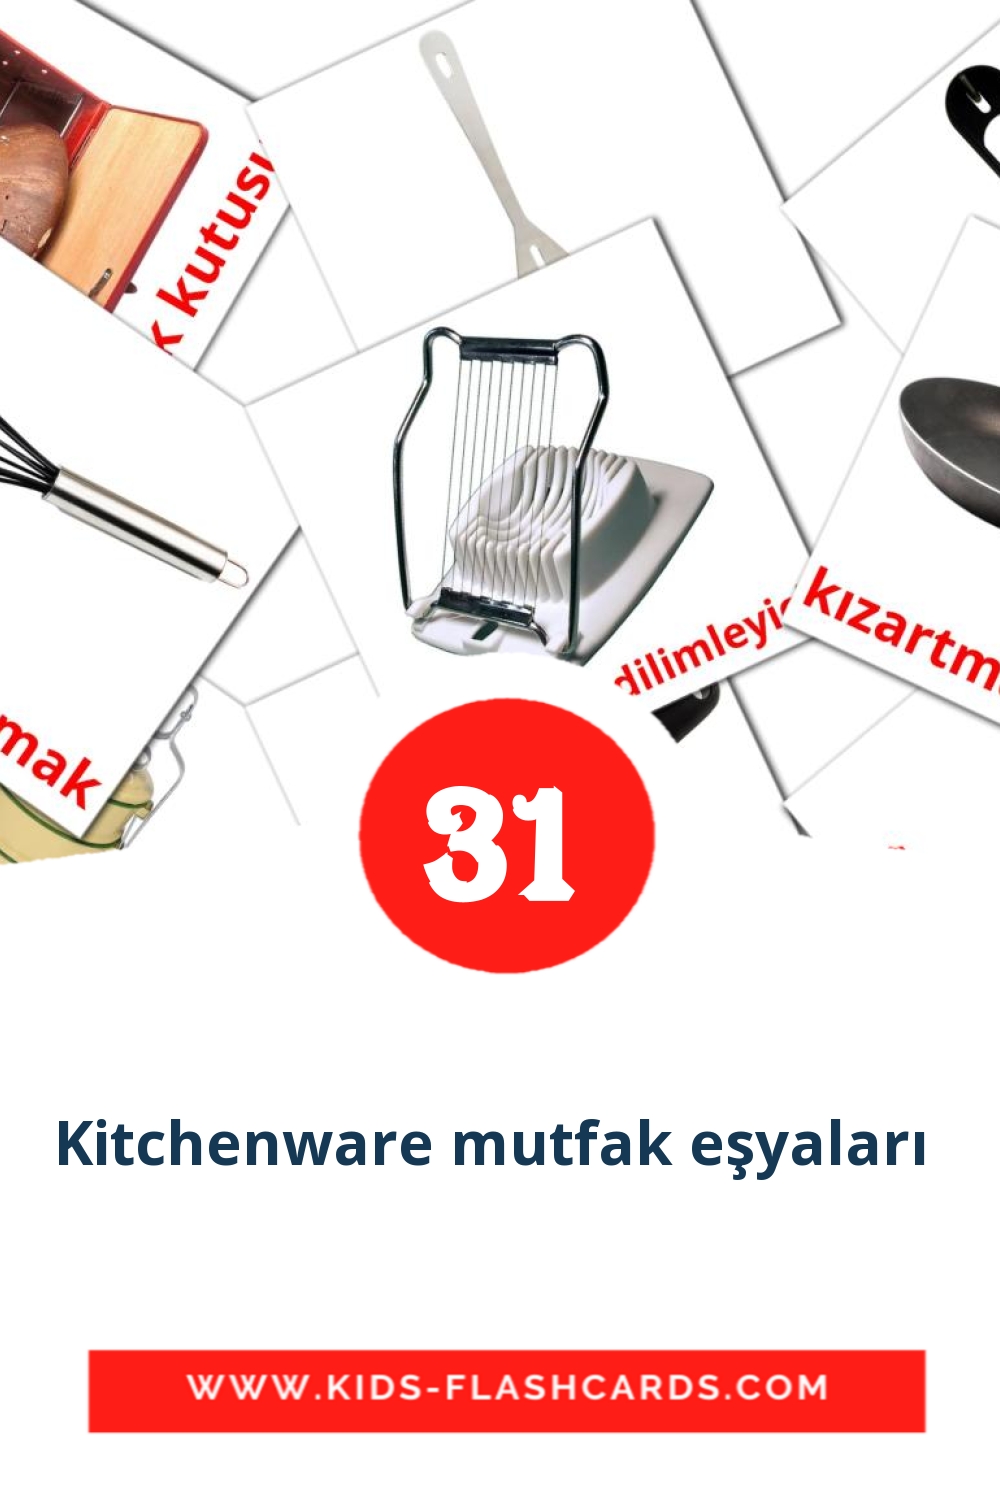 35 Kitchenware mutfak eşyaları  Picture Cards for Kindergarden in turkish